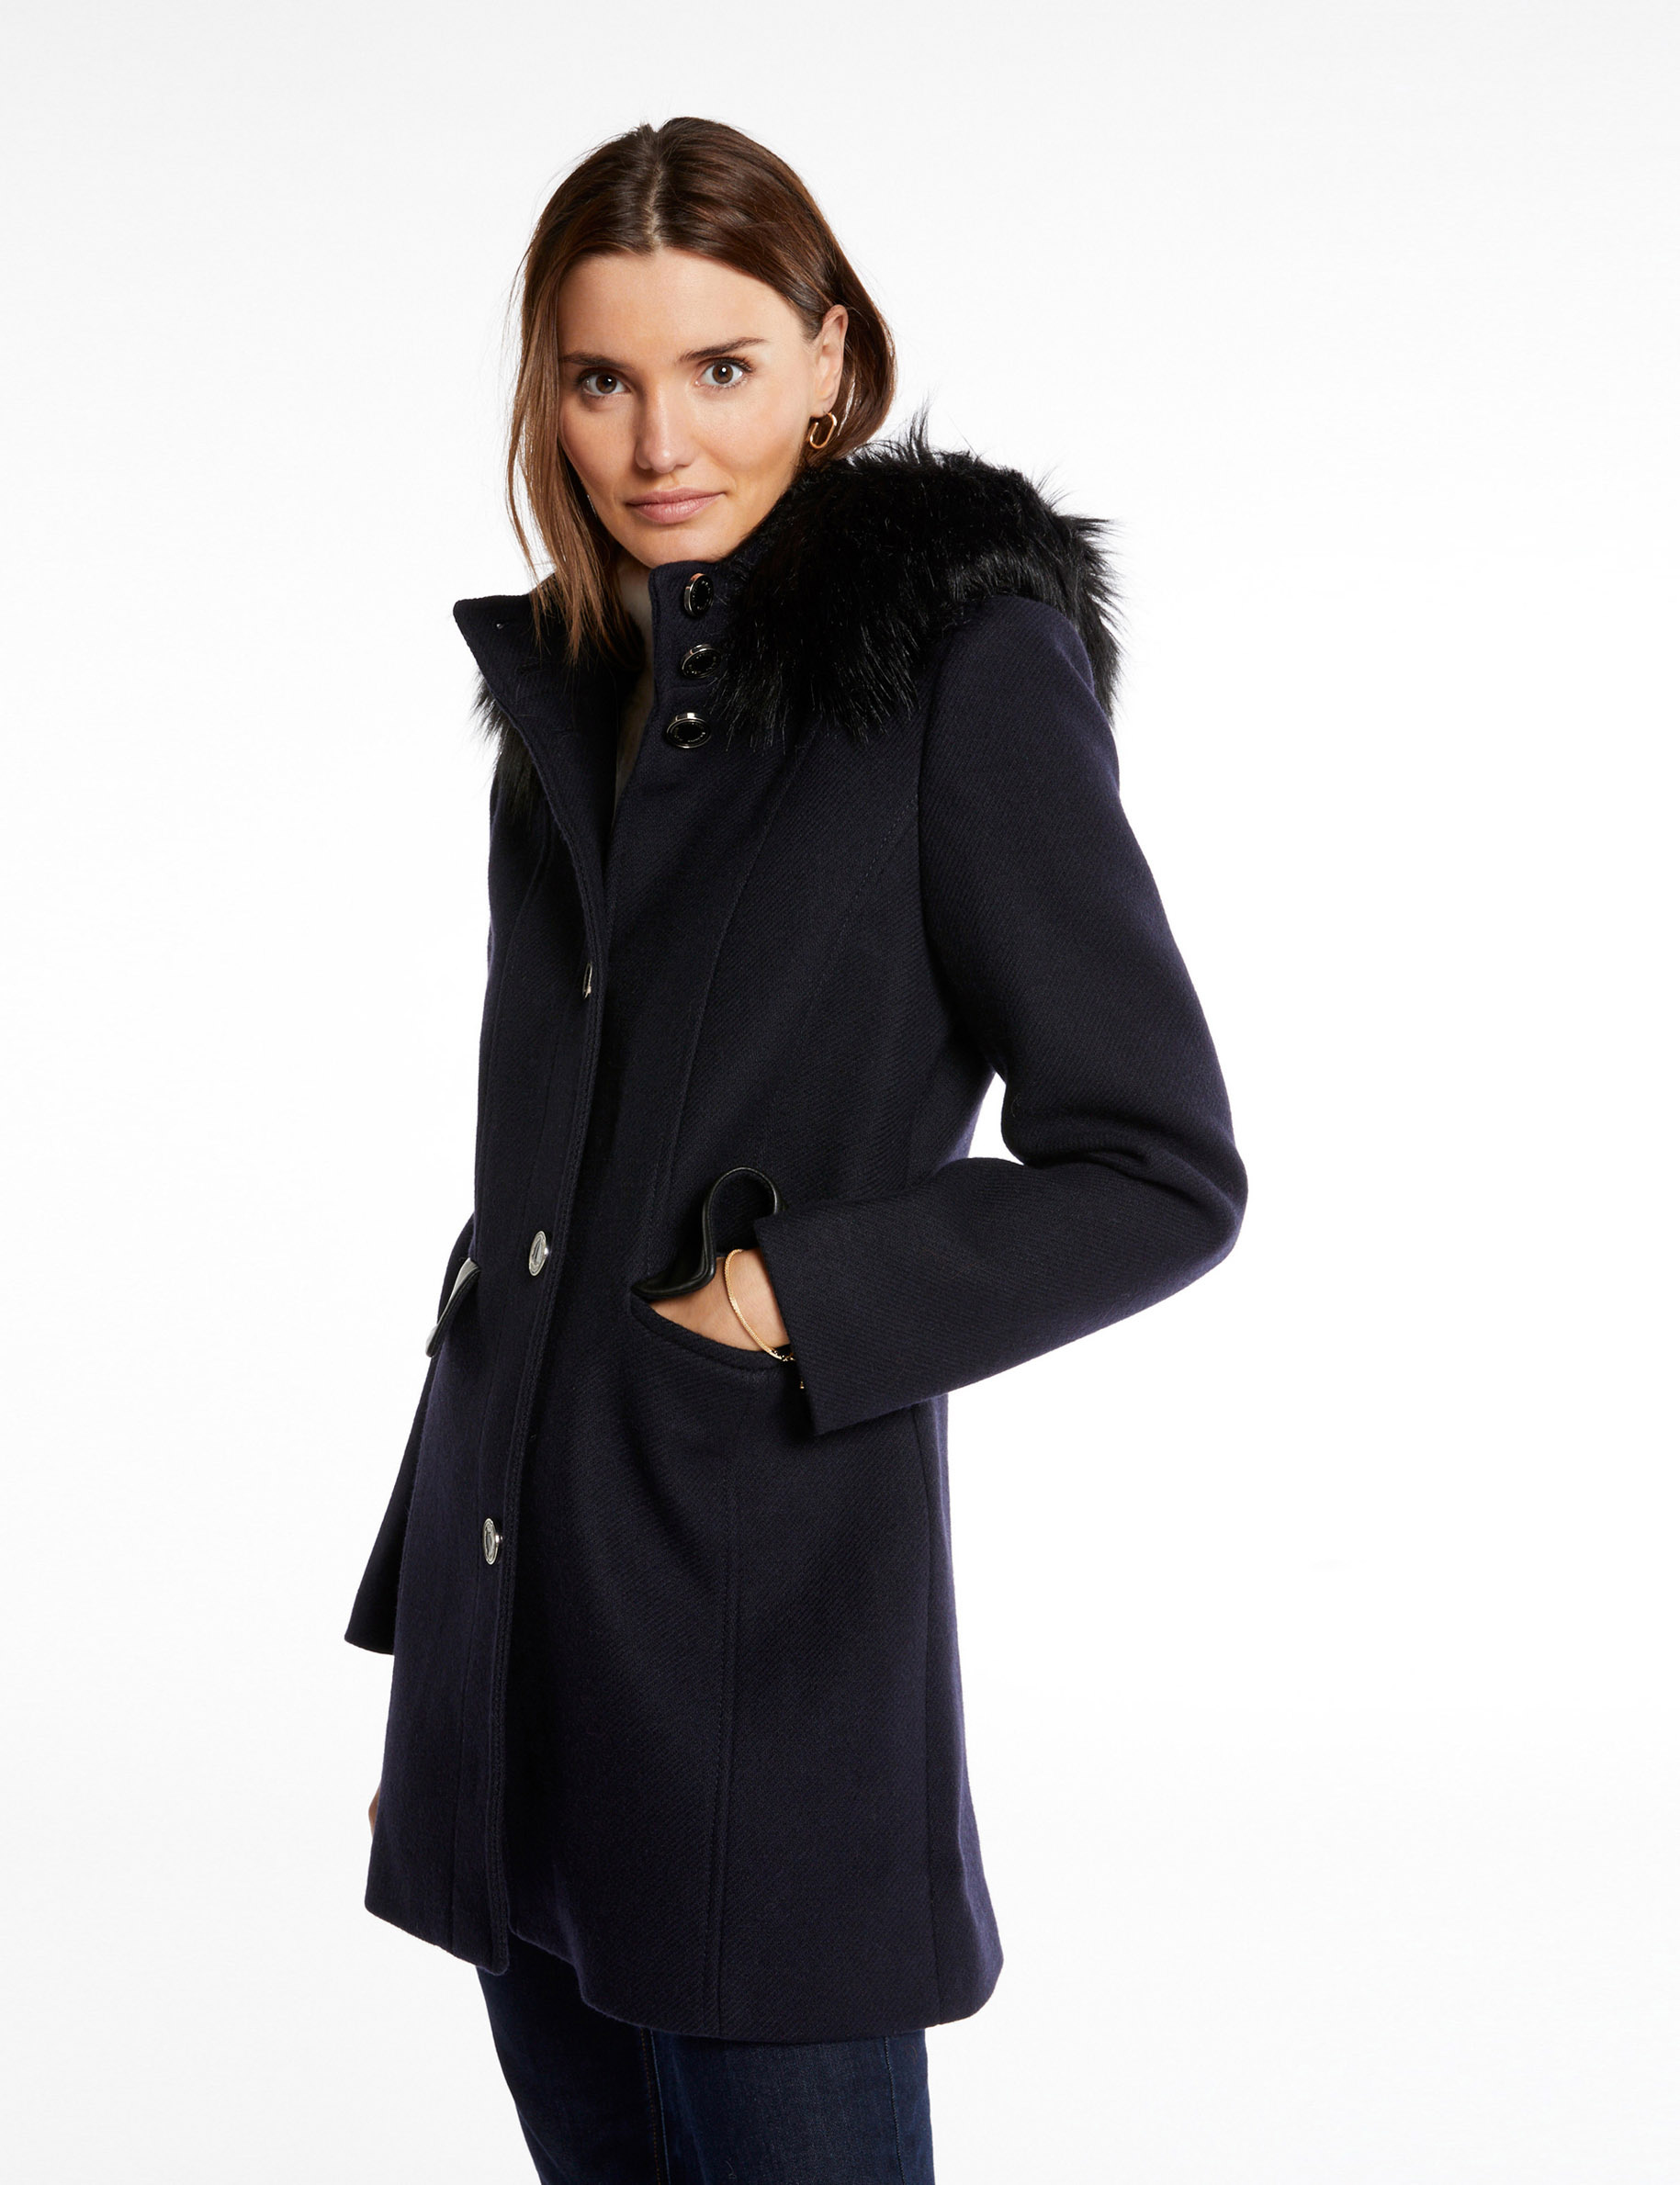 Long coat faux leather details navy ladies'